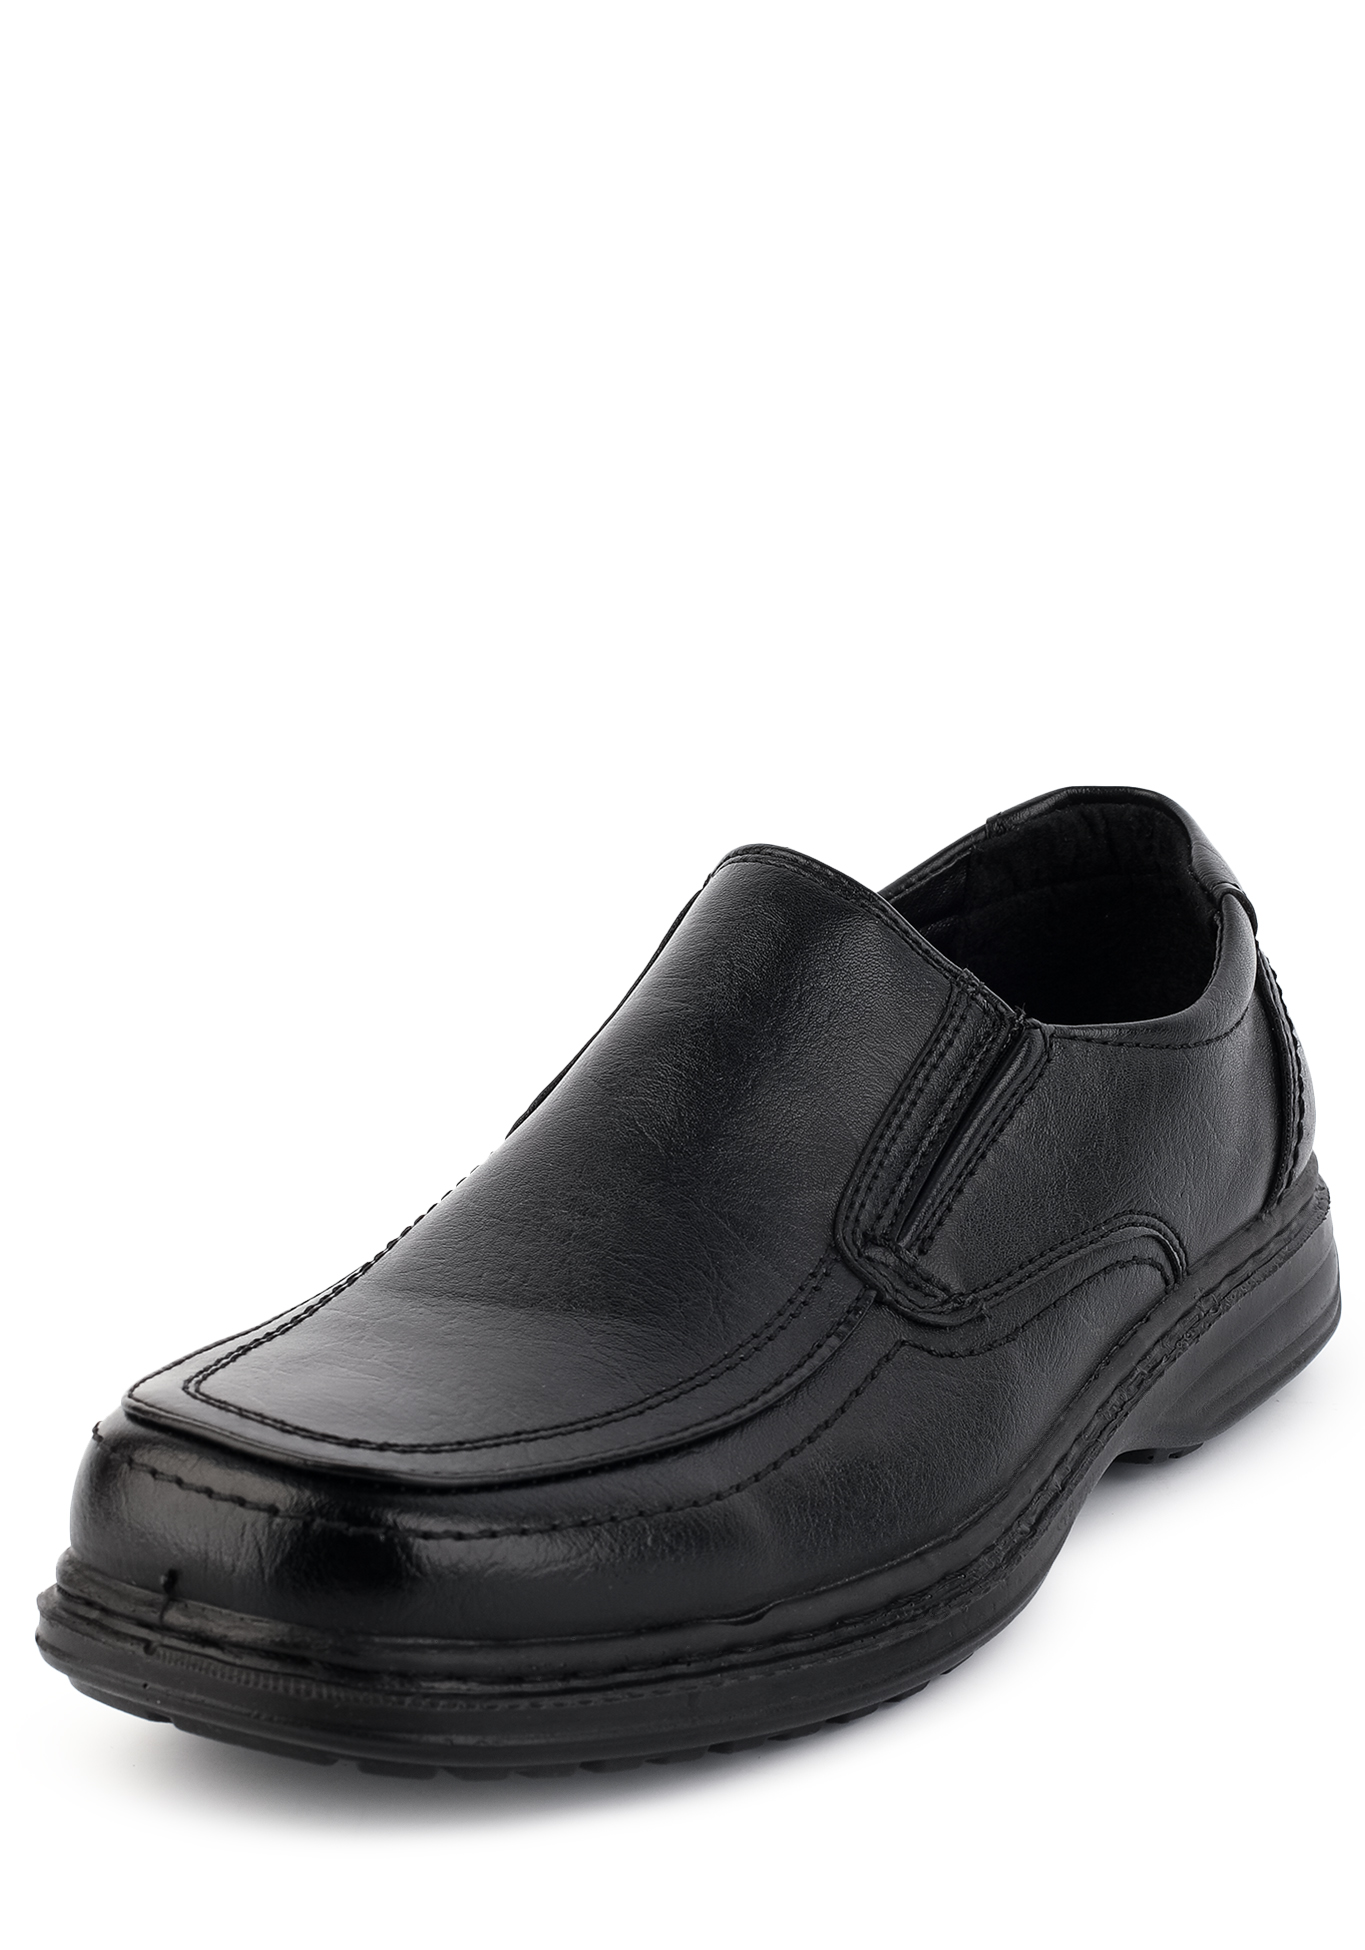 Туфли мужские "Дэвид" Trioshoes, размер 40, цвет черный